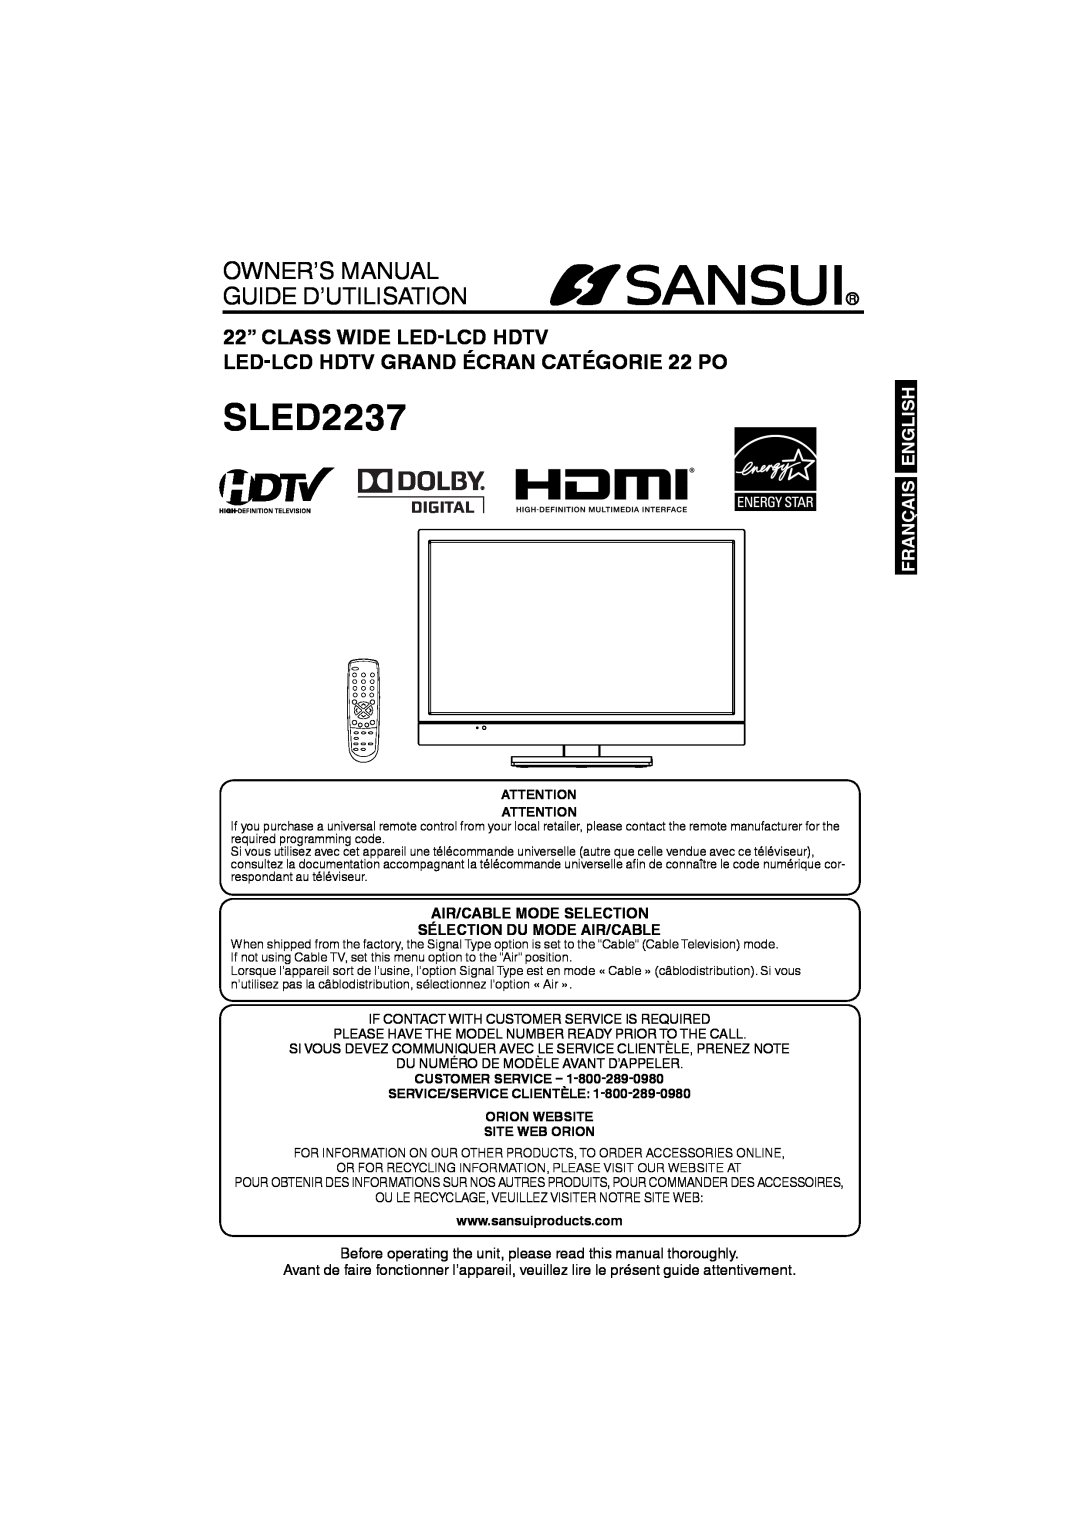 Sansui SLED2237 owner manual Français English, Air/Cable Mode Selection Sélection Du Mode Air/Cable, Site Web Orion 